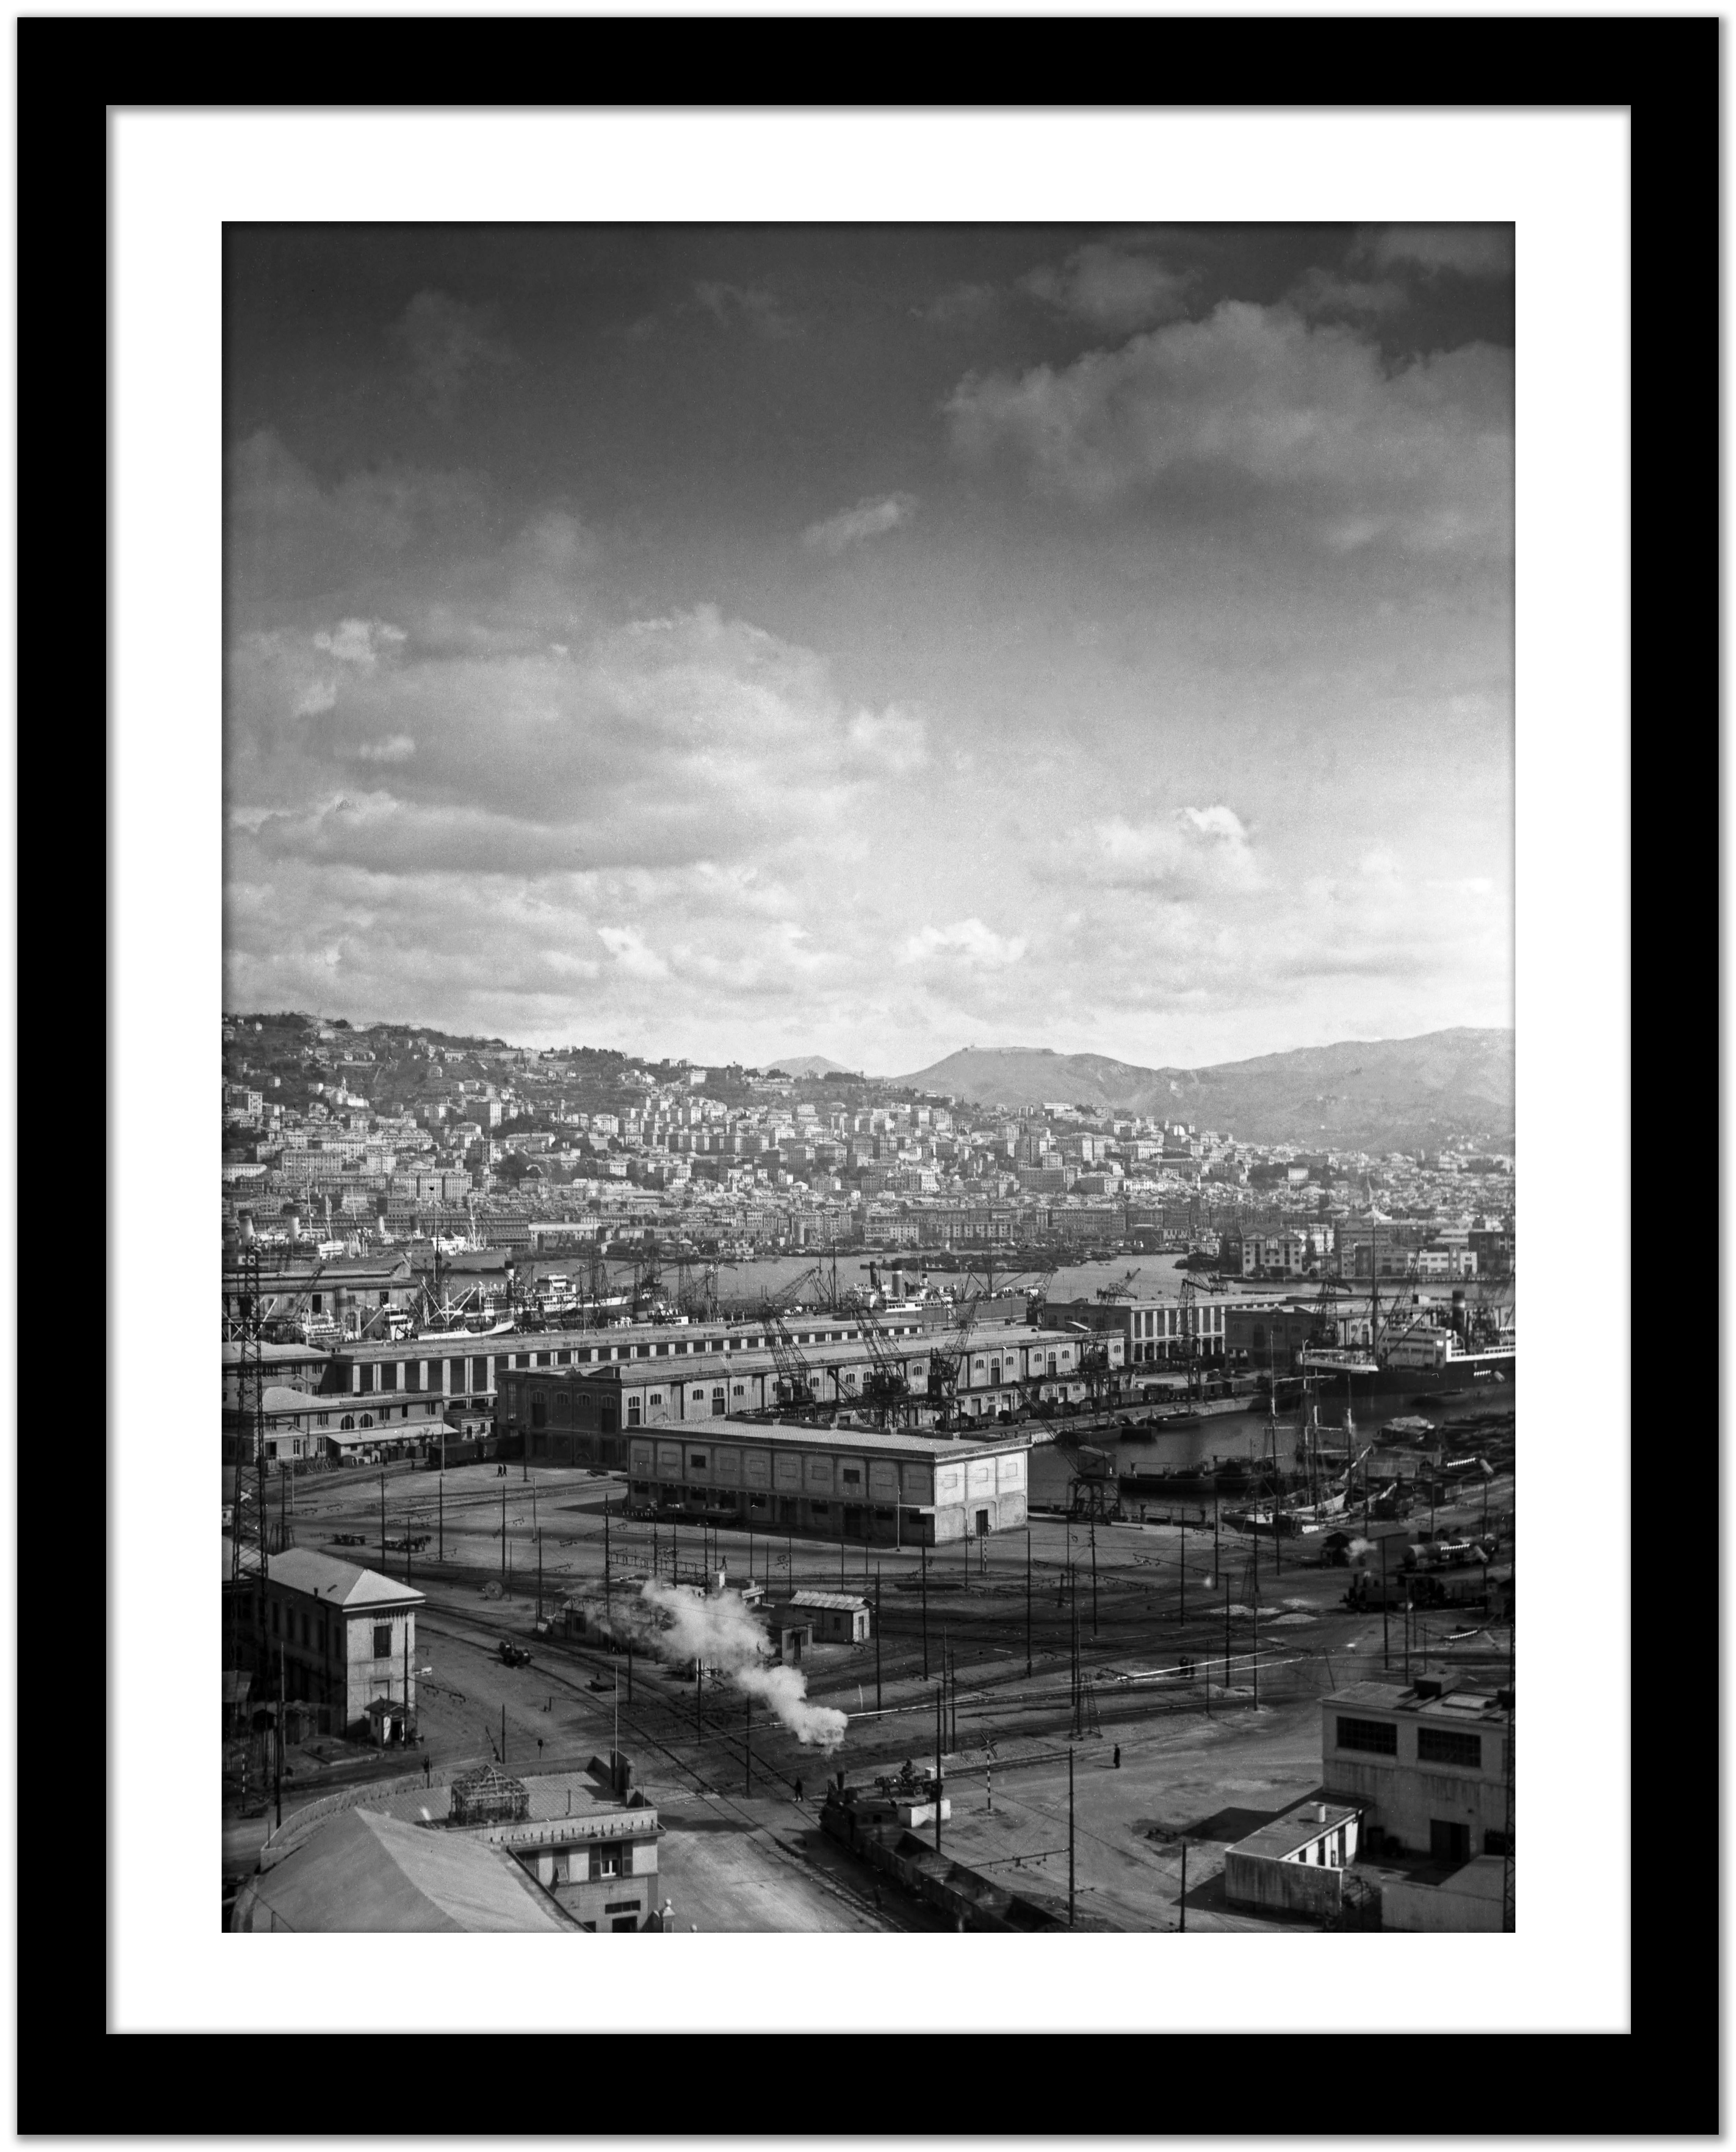  Vue industrielle - port de Genova, Italie 1939 Imprimé ultérieurement  - Gris Black and White Photograph par Karl Heinrich Lämmel